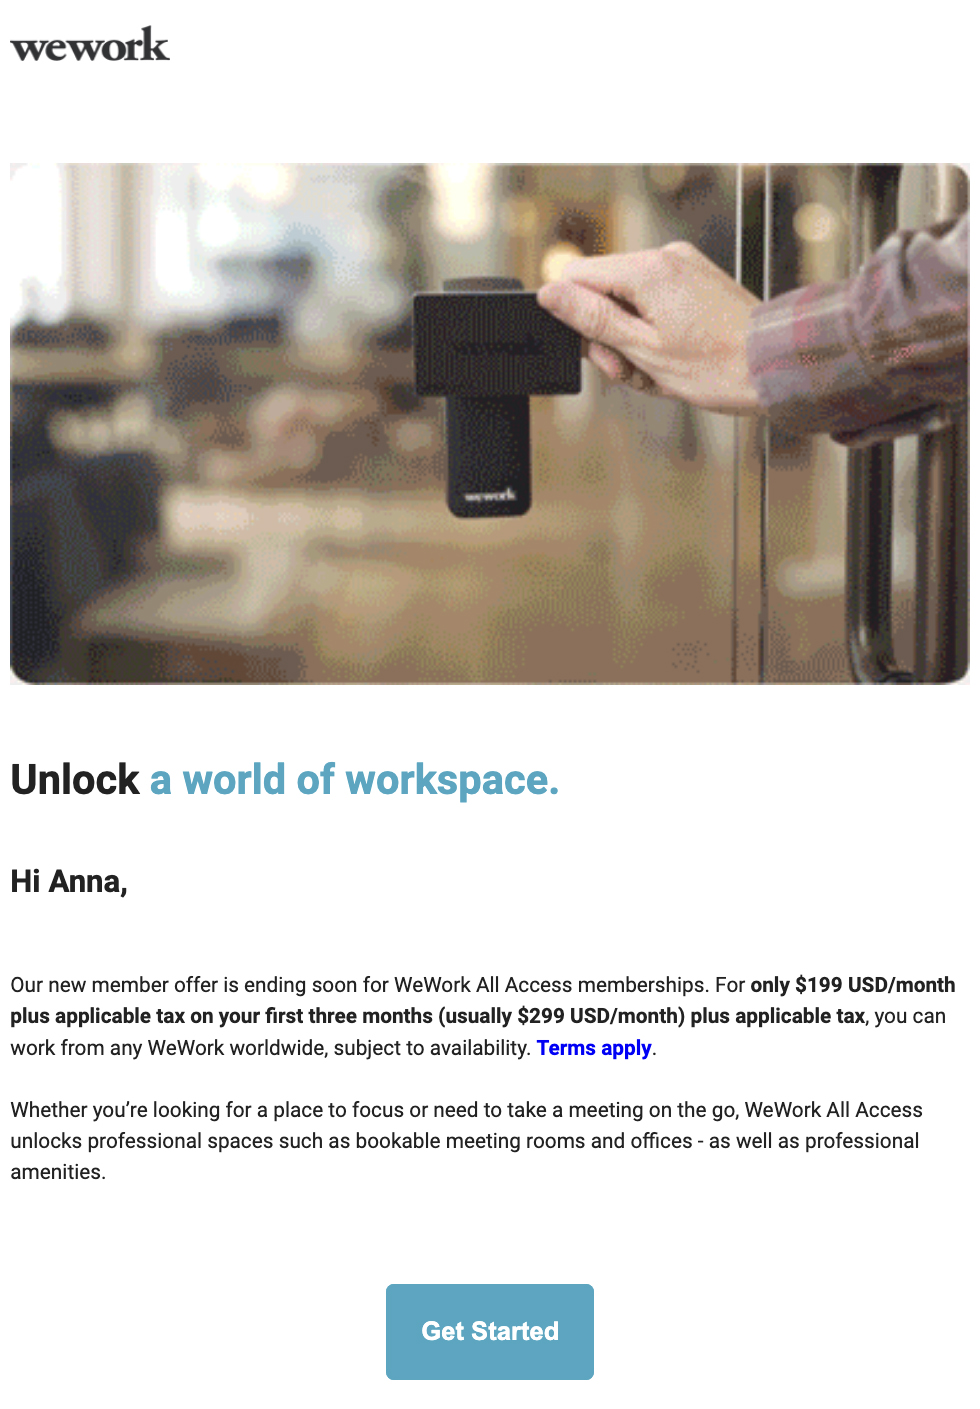 مثال على البريد الإلكتروني الترويجي لـ WeWork